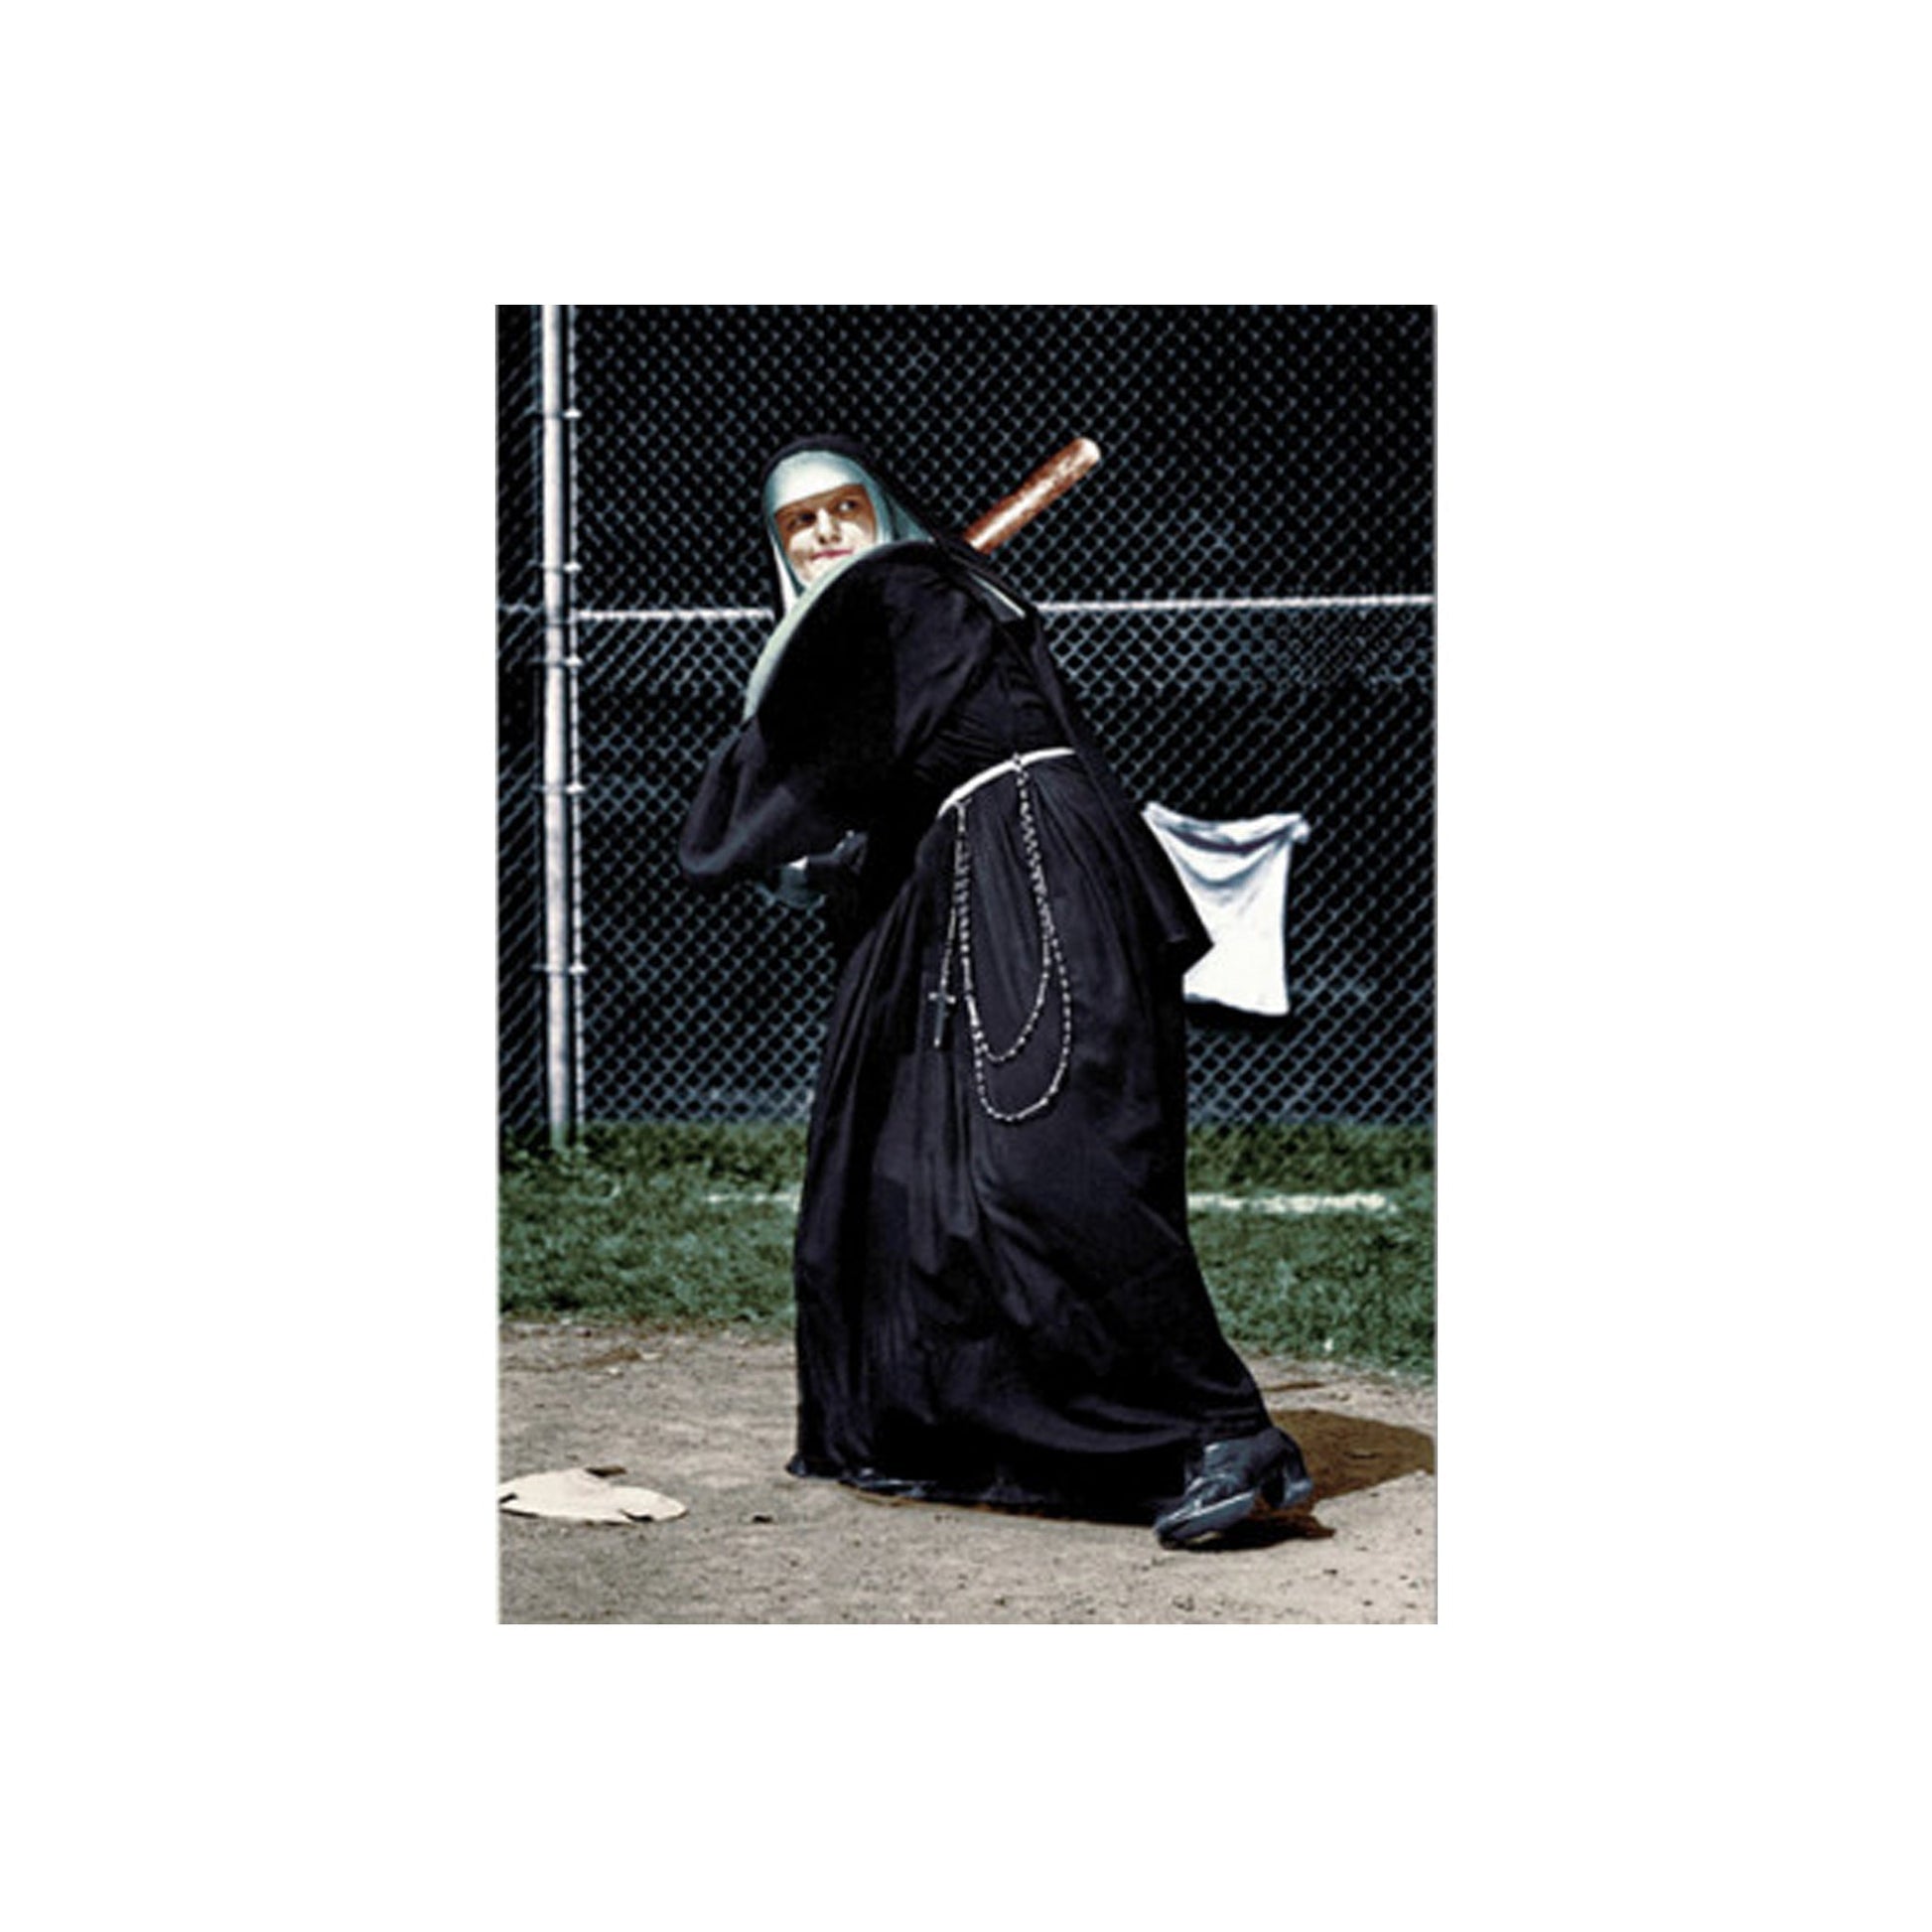 Postkarte "Nonne spielt Baseball" - Vandeley